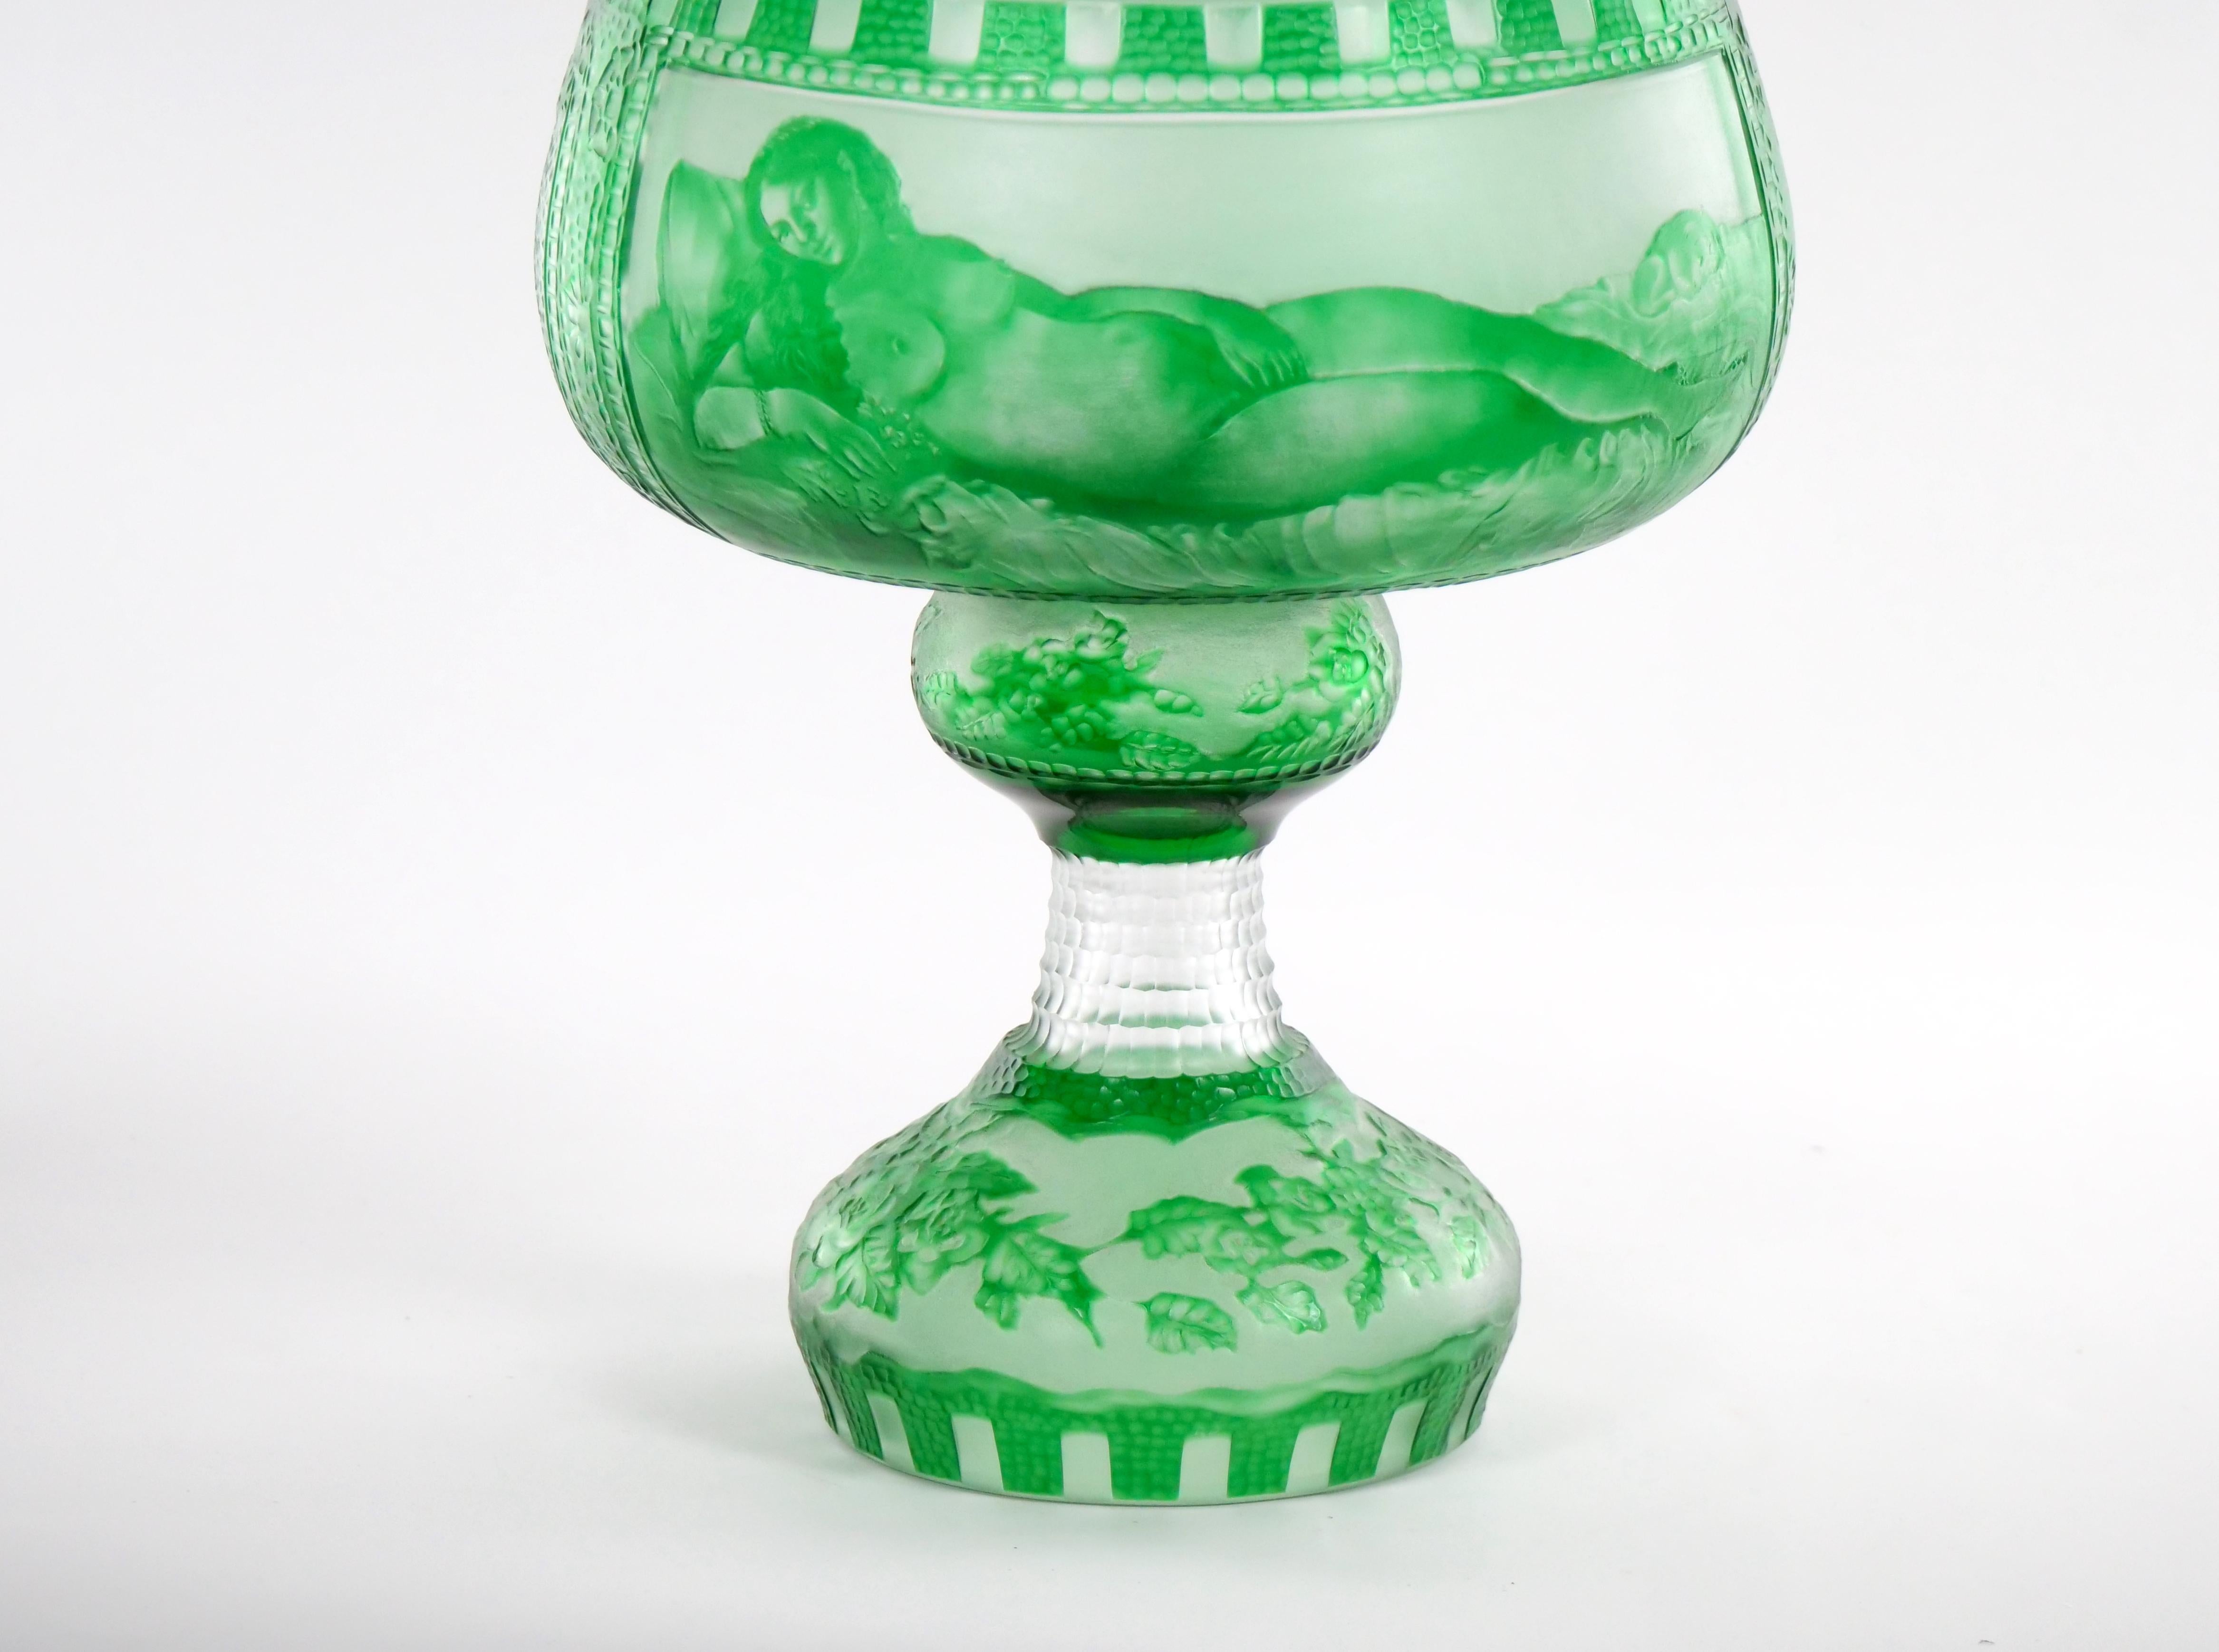 Grande coupe à pied en verre d'art vénitien du milieu du 19e siècle, gravée et décorée à la main. Le bol est décoré de différents détails gravés de chaque côté et repose sur un pied de forme ronde. Le centre de table n'a pas de fissures, d'éclats ou